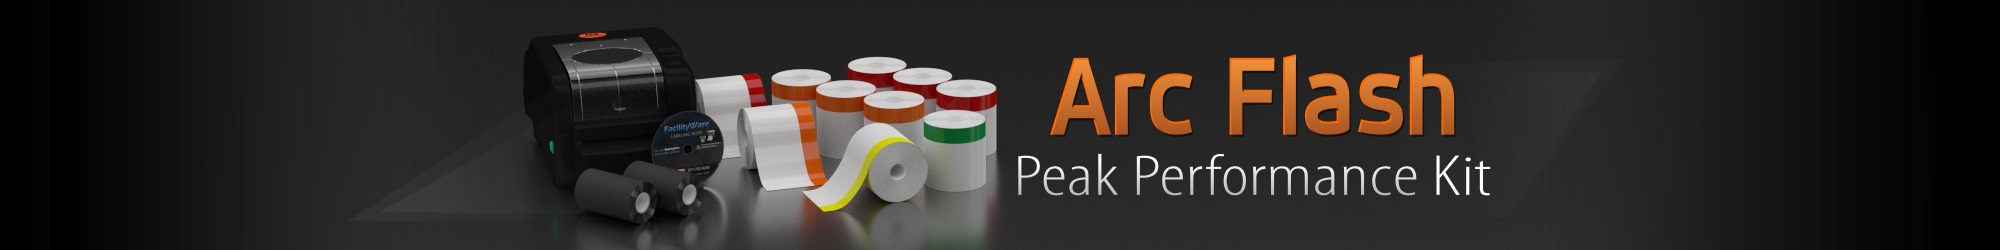 Arc Flash Peak Performance Kit